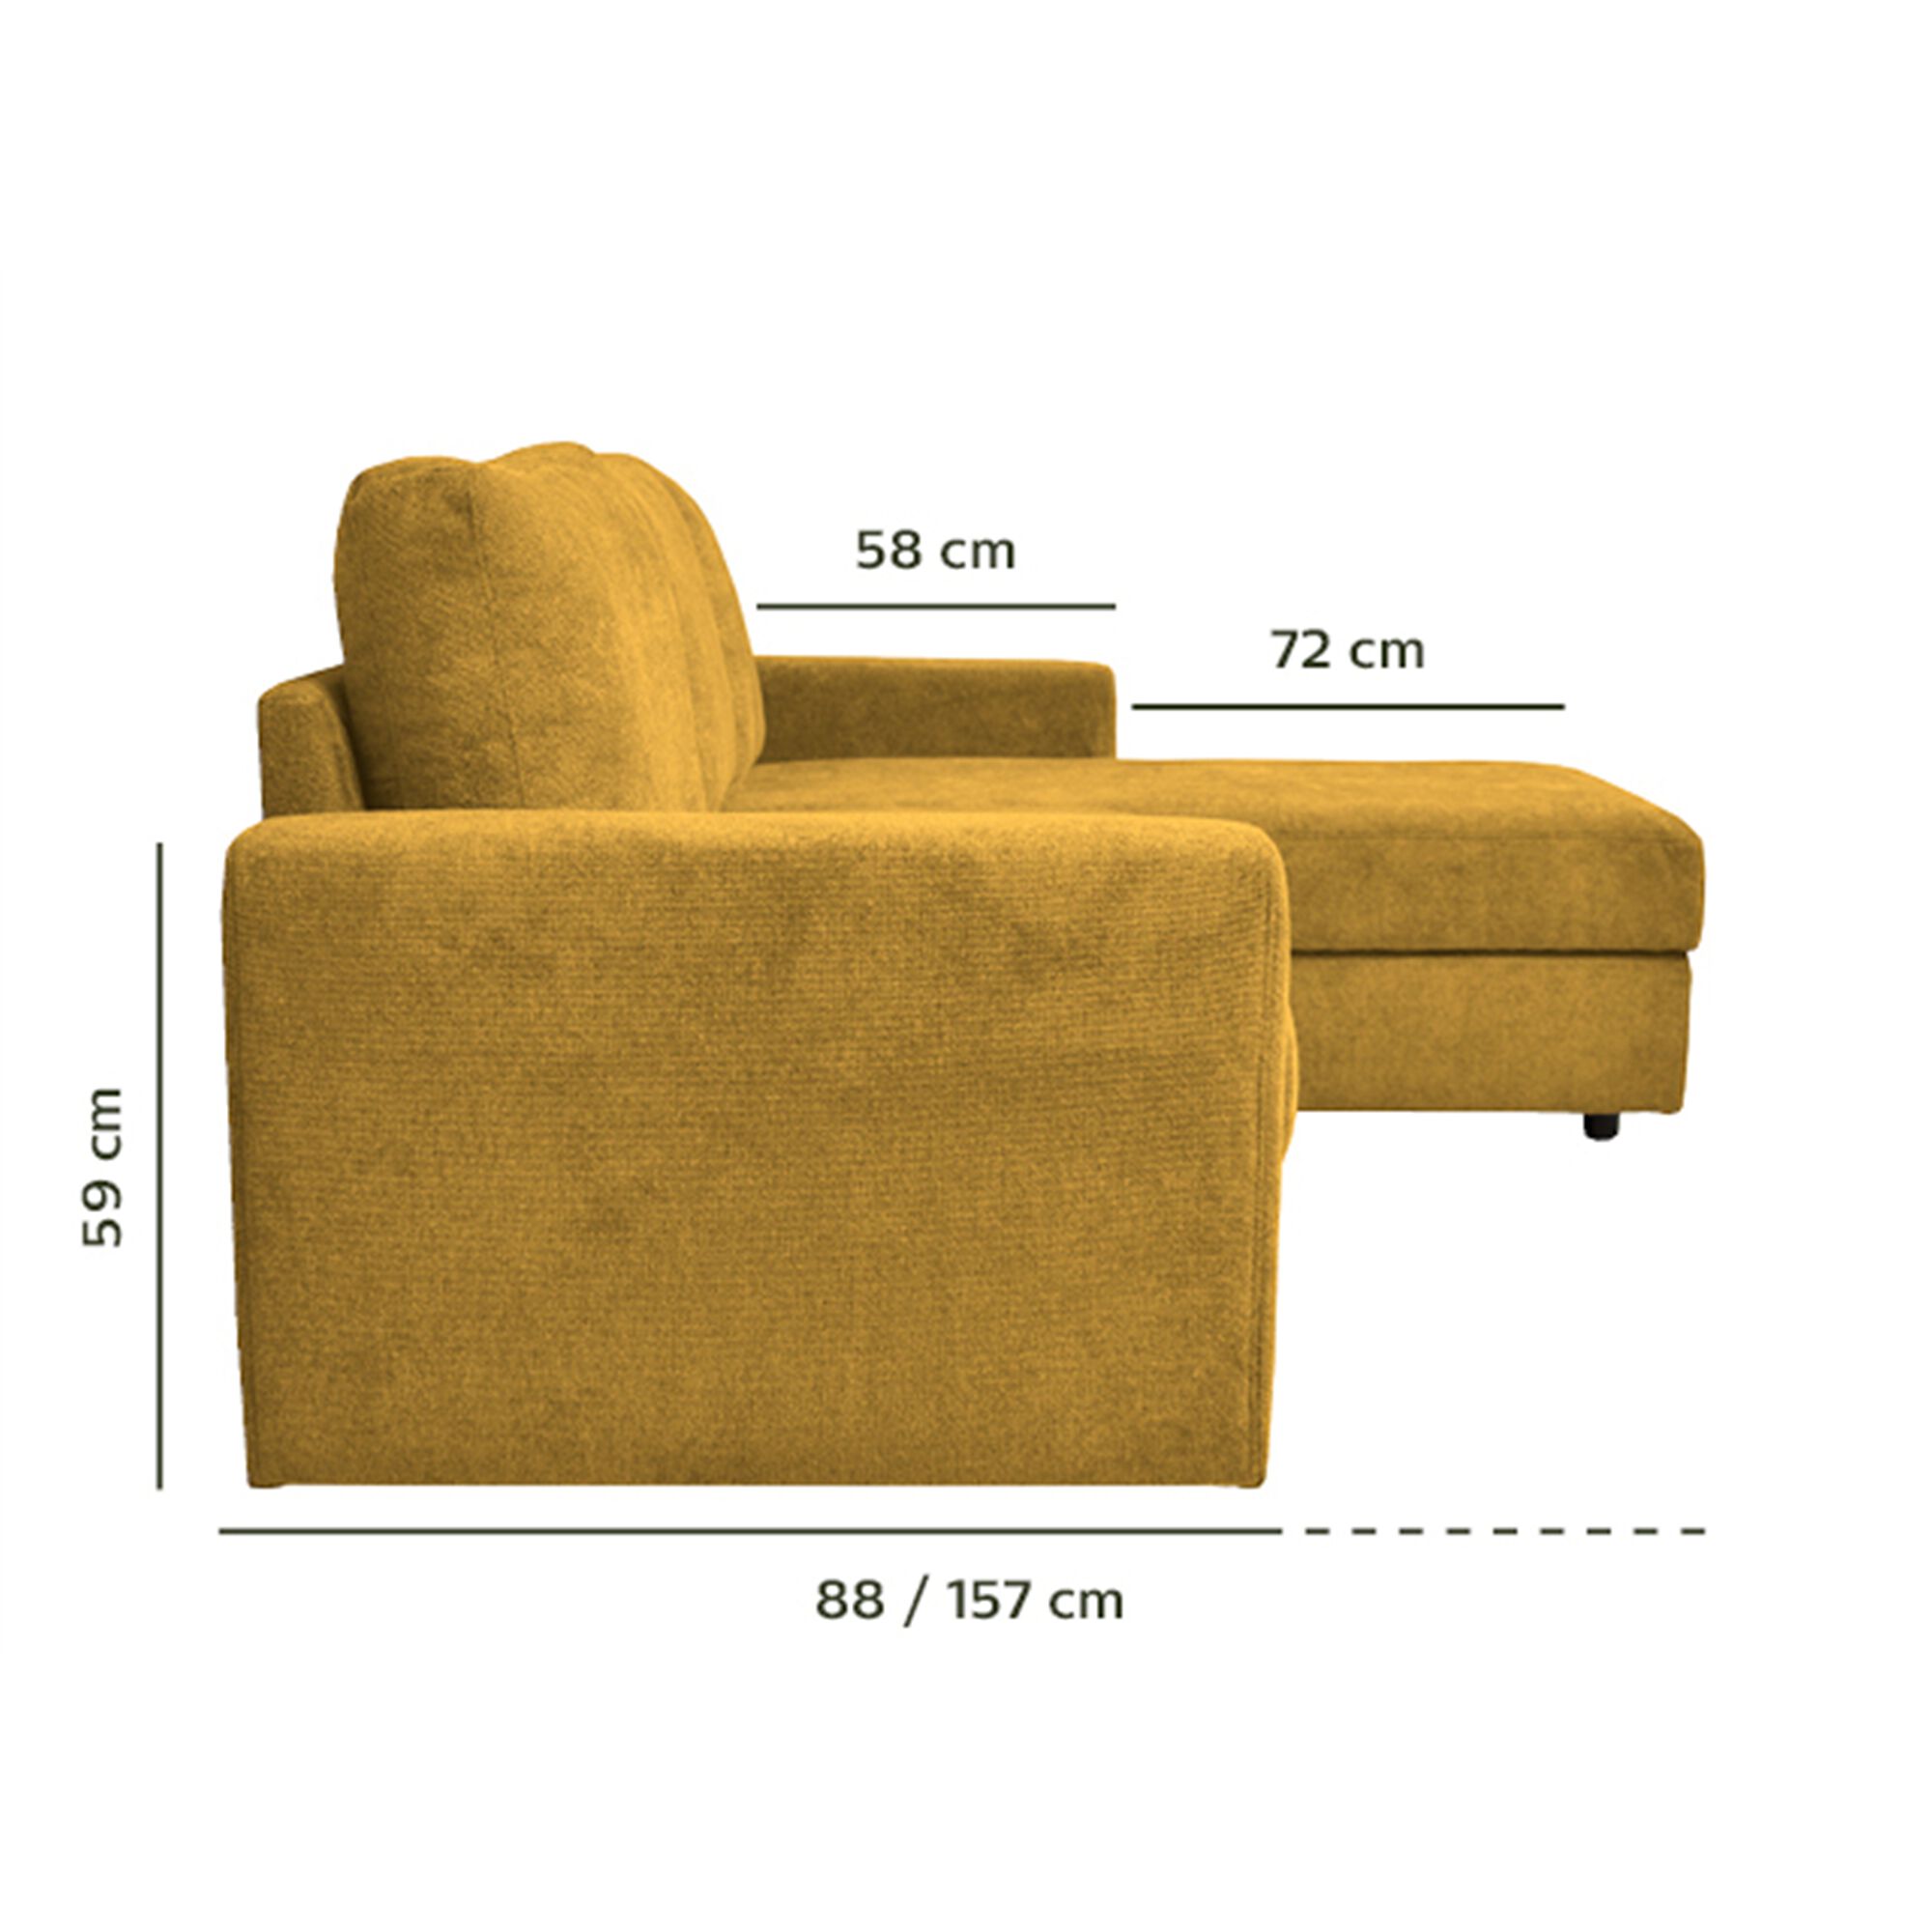 Canapé d'angle réversible convertible en tissu tramé - jaune argan-HONORE